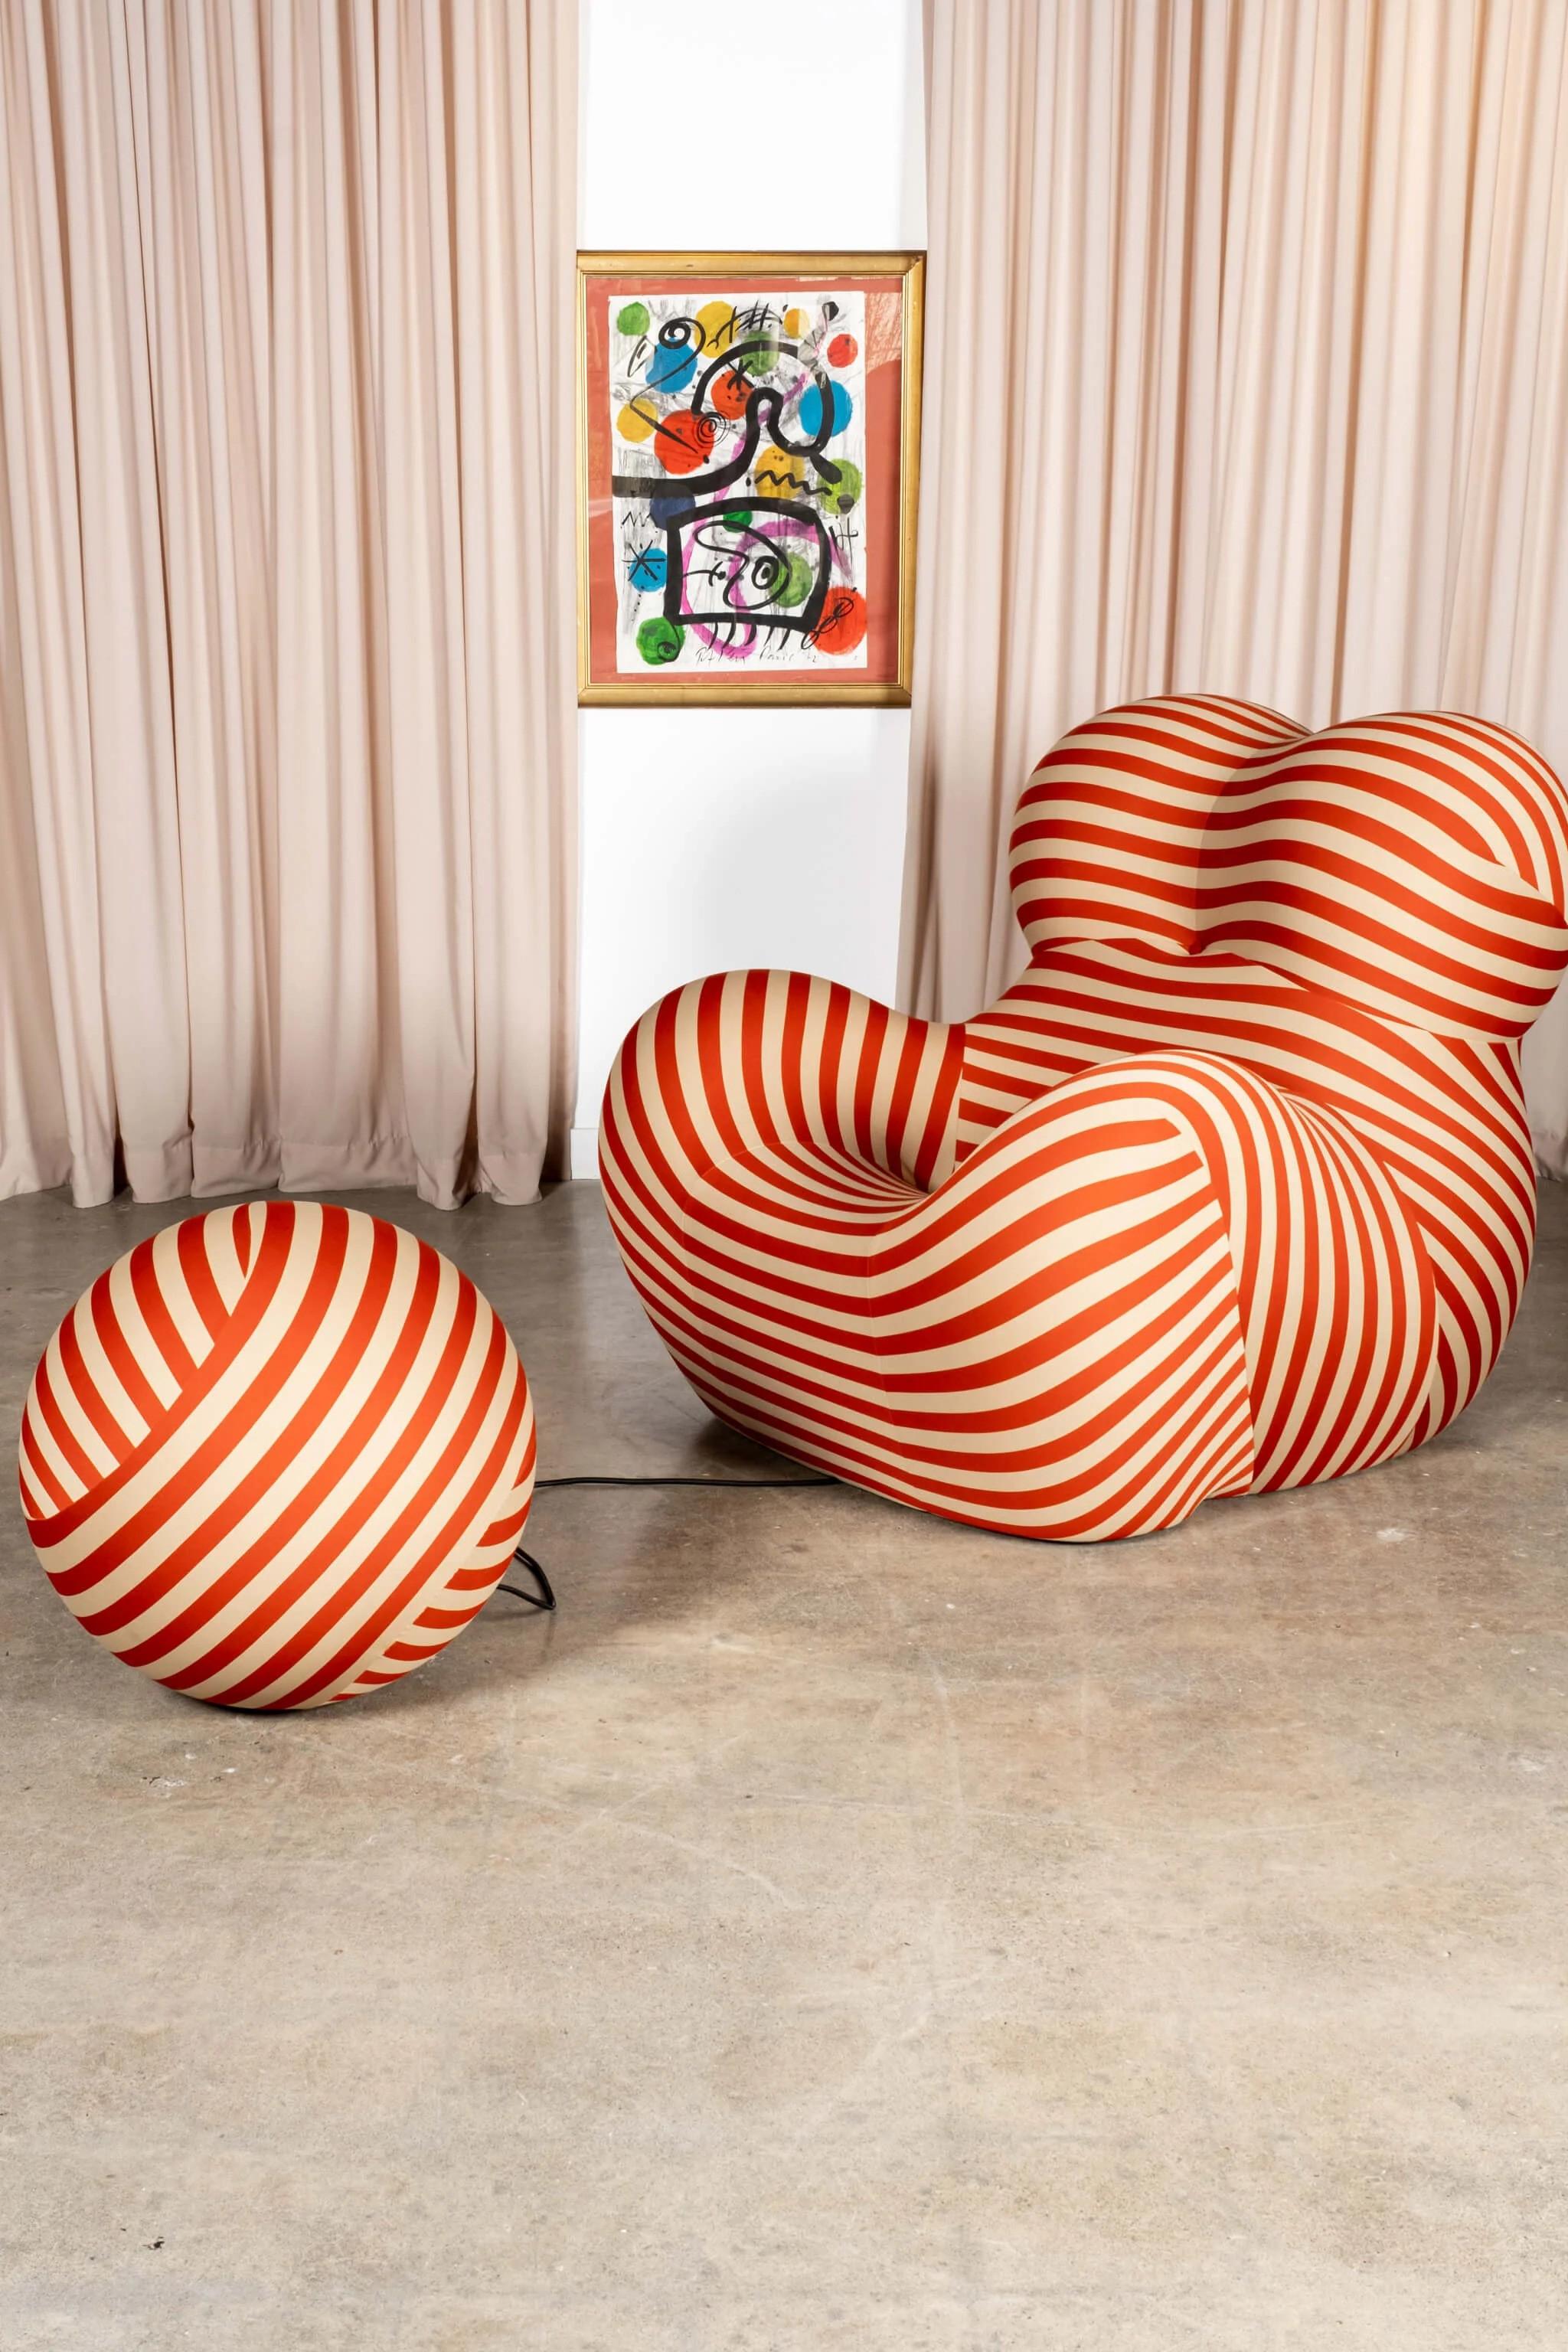 Depuis sa première apparition, la série Up, conçue en 1969 par Gaetano Pesce, est l'un des exemples les plus discutés de mobilier moderne. L'impact visuel exceptionnel de six modèles de sièges en forme de boule de différentes tailles, entièrement